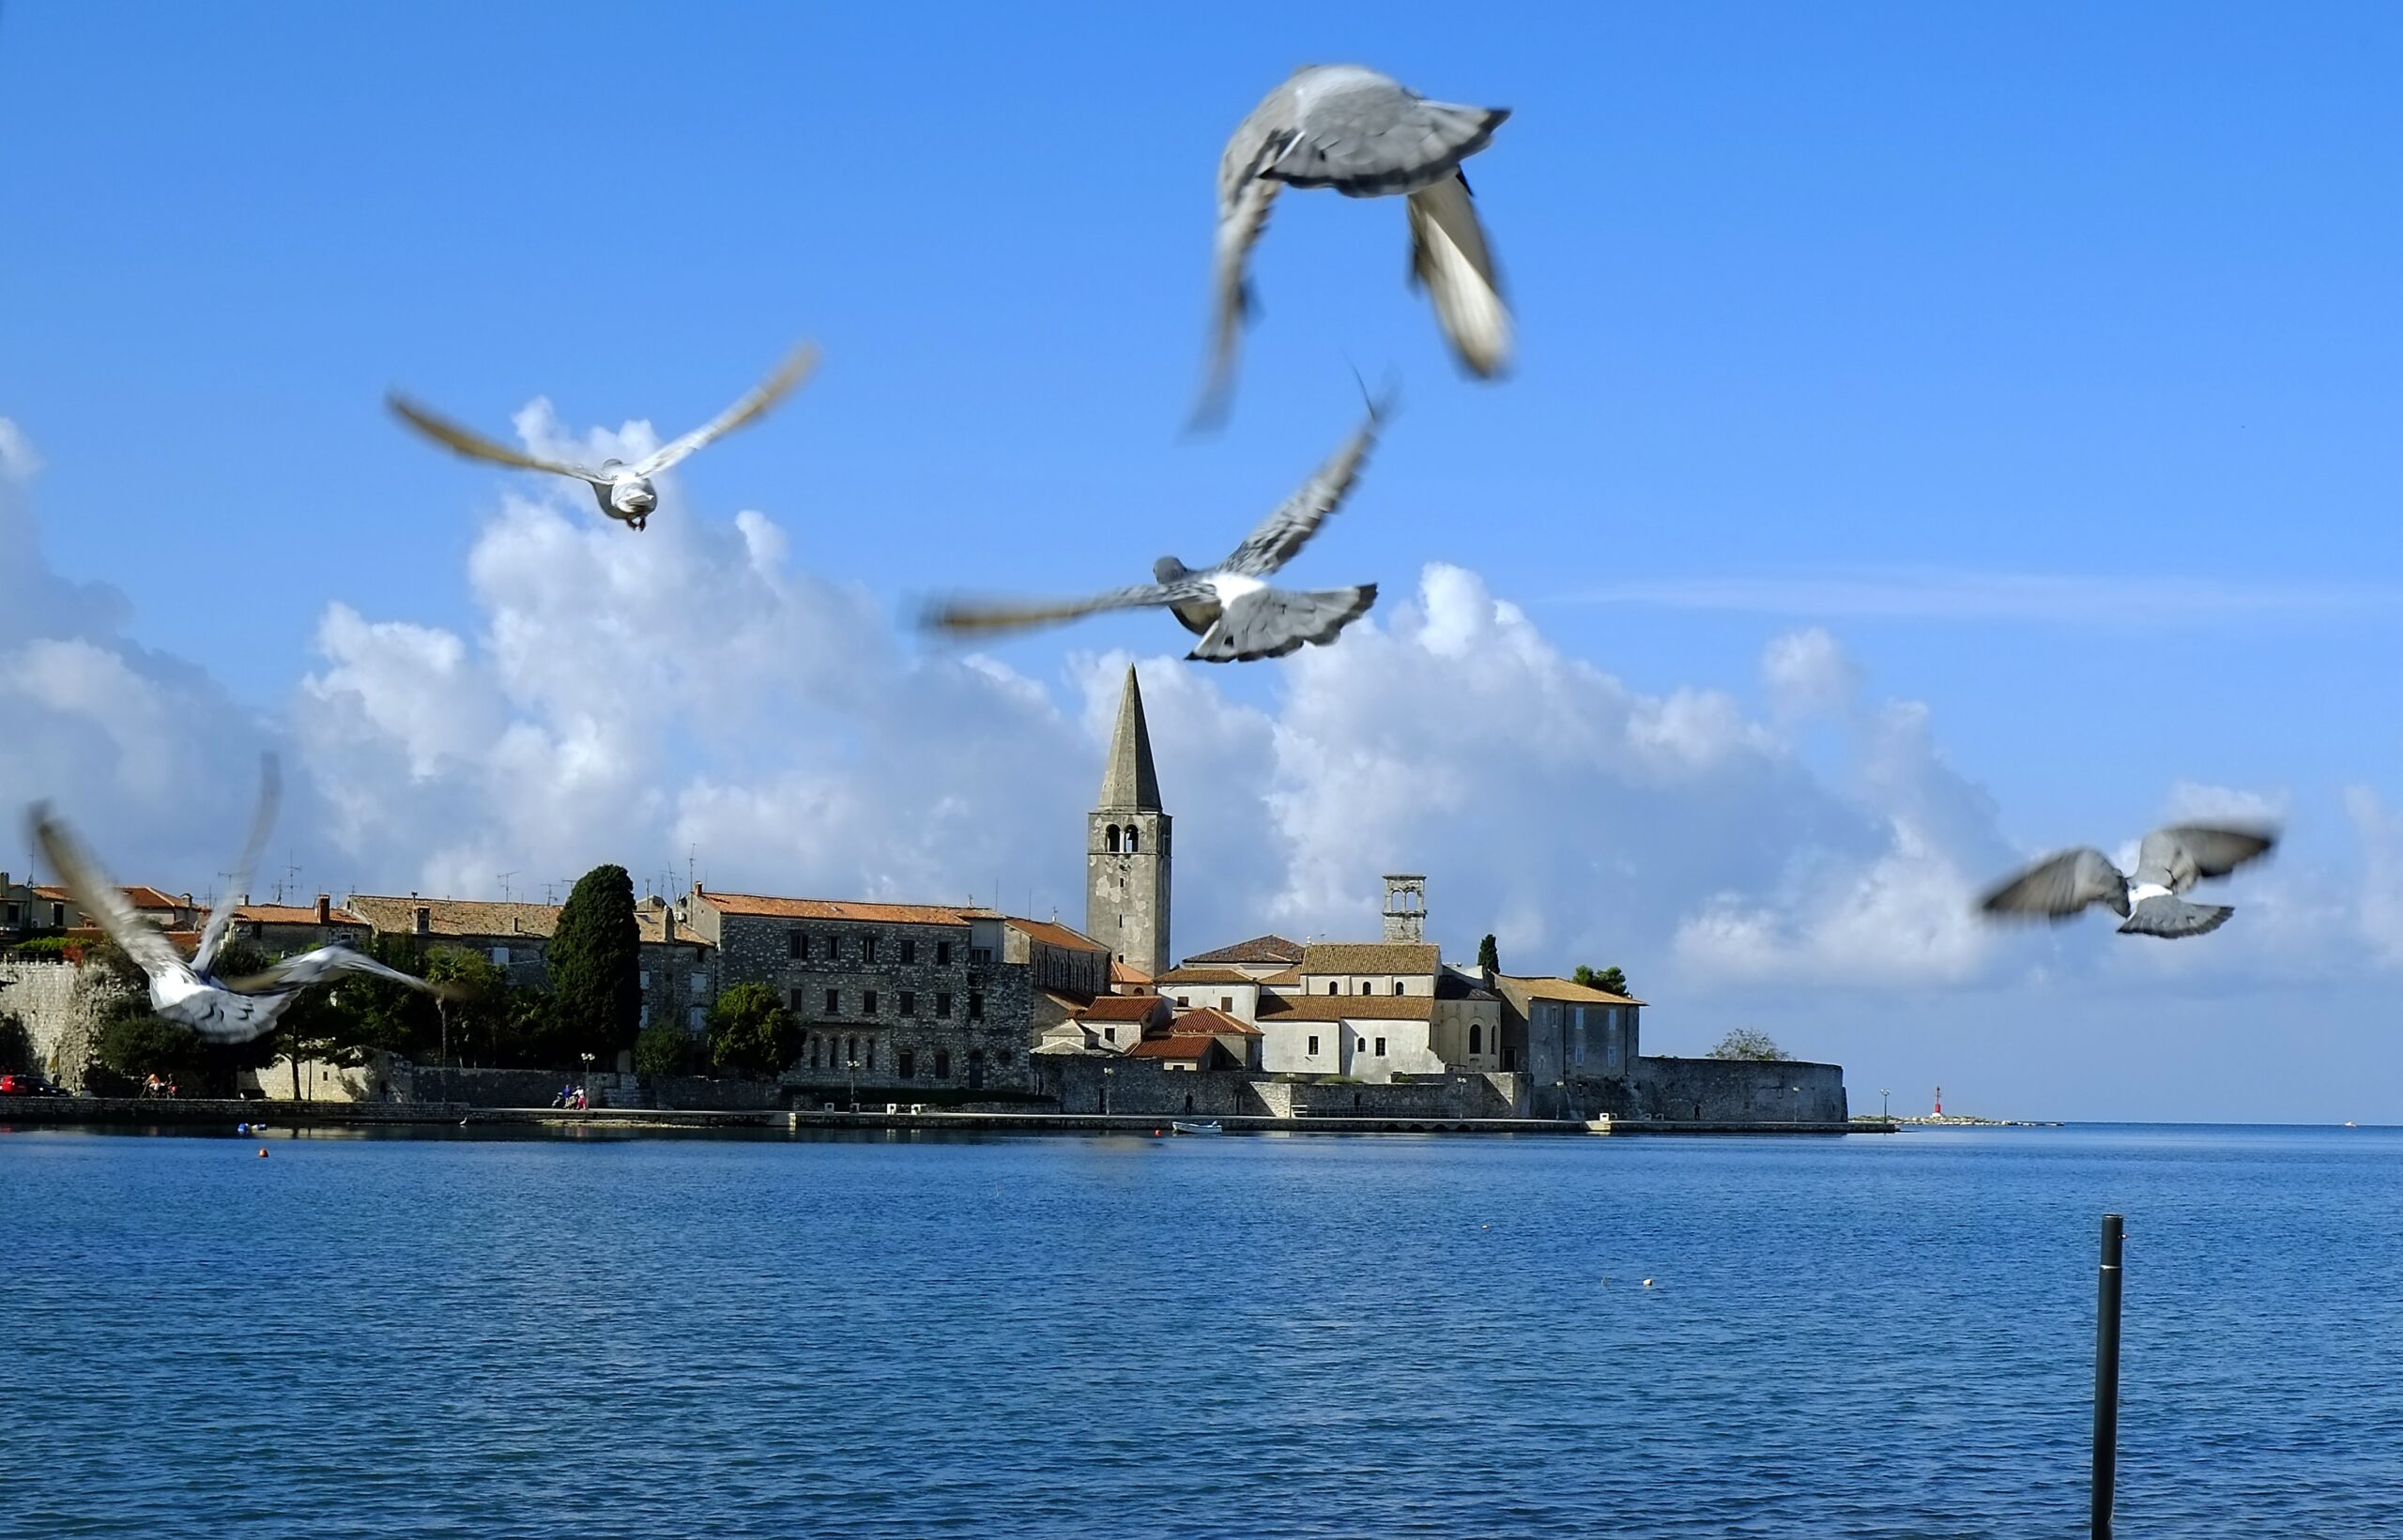 Blik op het stadje Poreč in de Kroatische regio Istrië. Foto: EPA/ANTONIO BAT